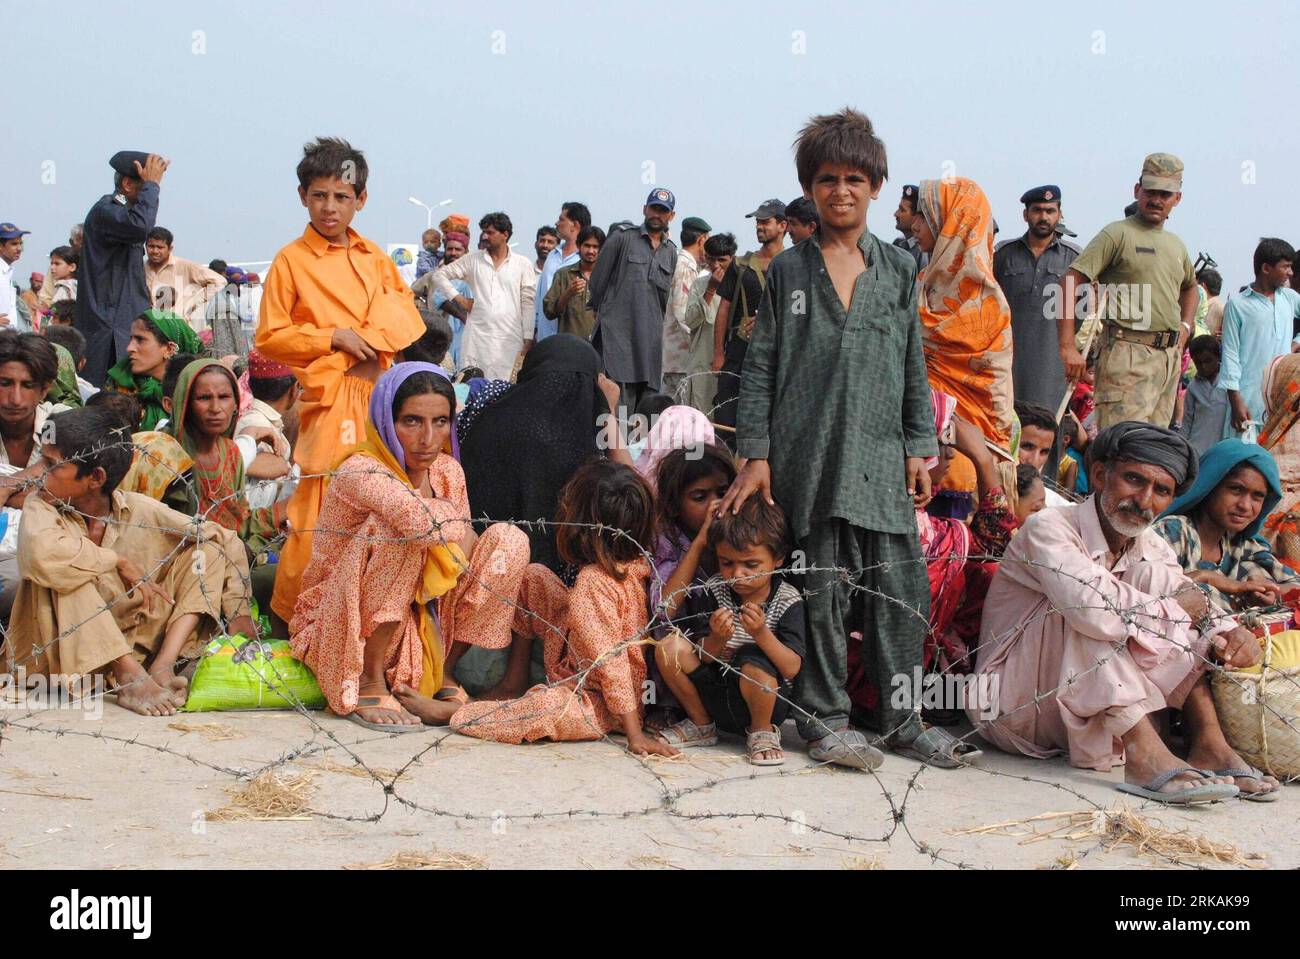 Bildnummer: 54392168  Datum: 02.09.2010  Copyright: imago/Xinhua (100902) -- BALOCHISTAN, Sept. 2, 2010 (Xinhua) -- Pakistani flood survivors sit on ground and wait for relief goods in Dera Murad Jamali, Balochistan, southwest Pakistan, Sept. 2, 2010. The month-long devastating floods, the worst in Pakistan s history, have killed at least 1,710 and affected over 20 million others. (Xinhua/Iqbal Hussain)(wjd) PAKISTAN-BALOCHISTAN-FLOODS PUBLICATIONxNOTxINxCHN Gesellschaft Naturkatatstrophe Überschwemmung Hochwasser Flut kbdig xdp 2010 quer   o0 Totale Opfer Notunterkunft    Bildnummer 54392168 Stock Photo